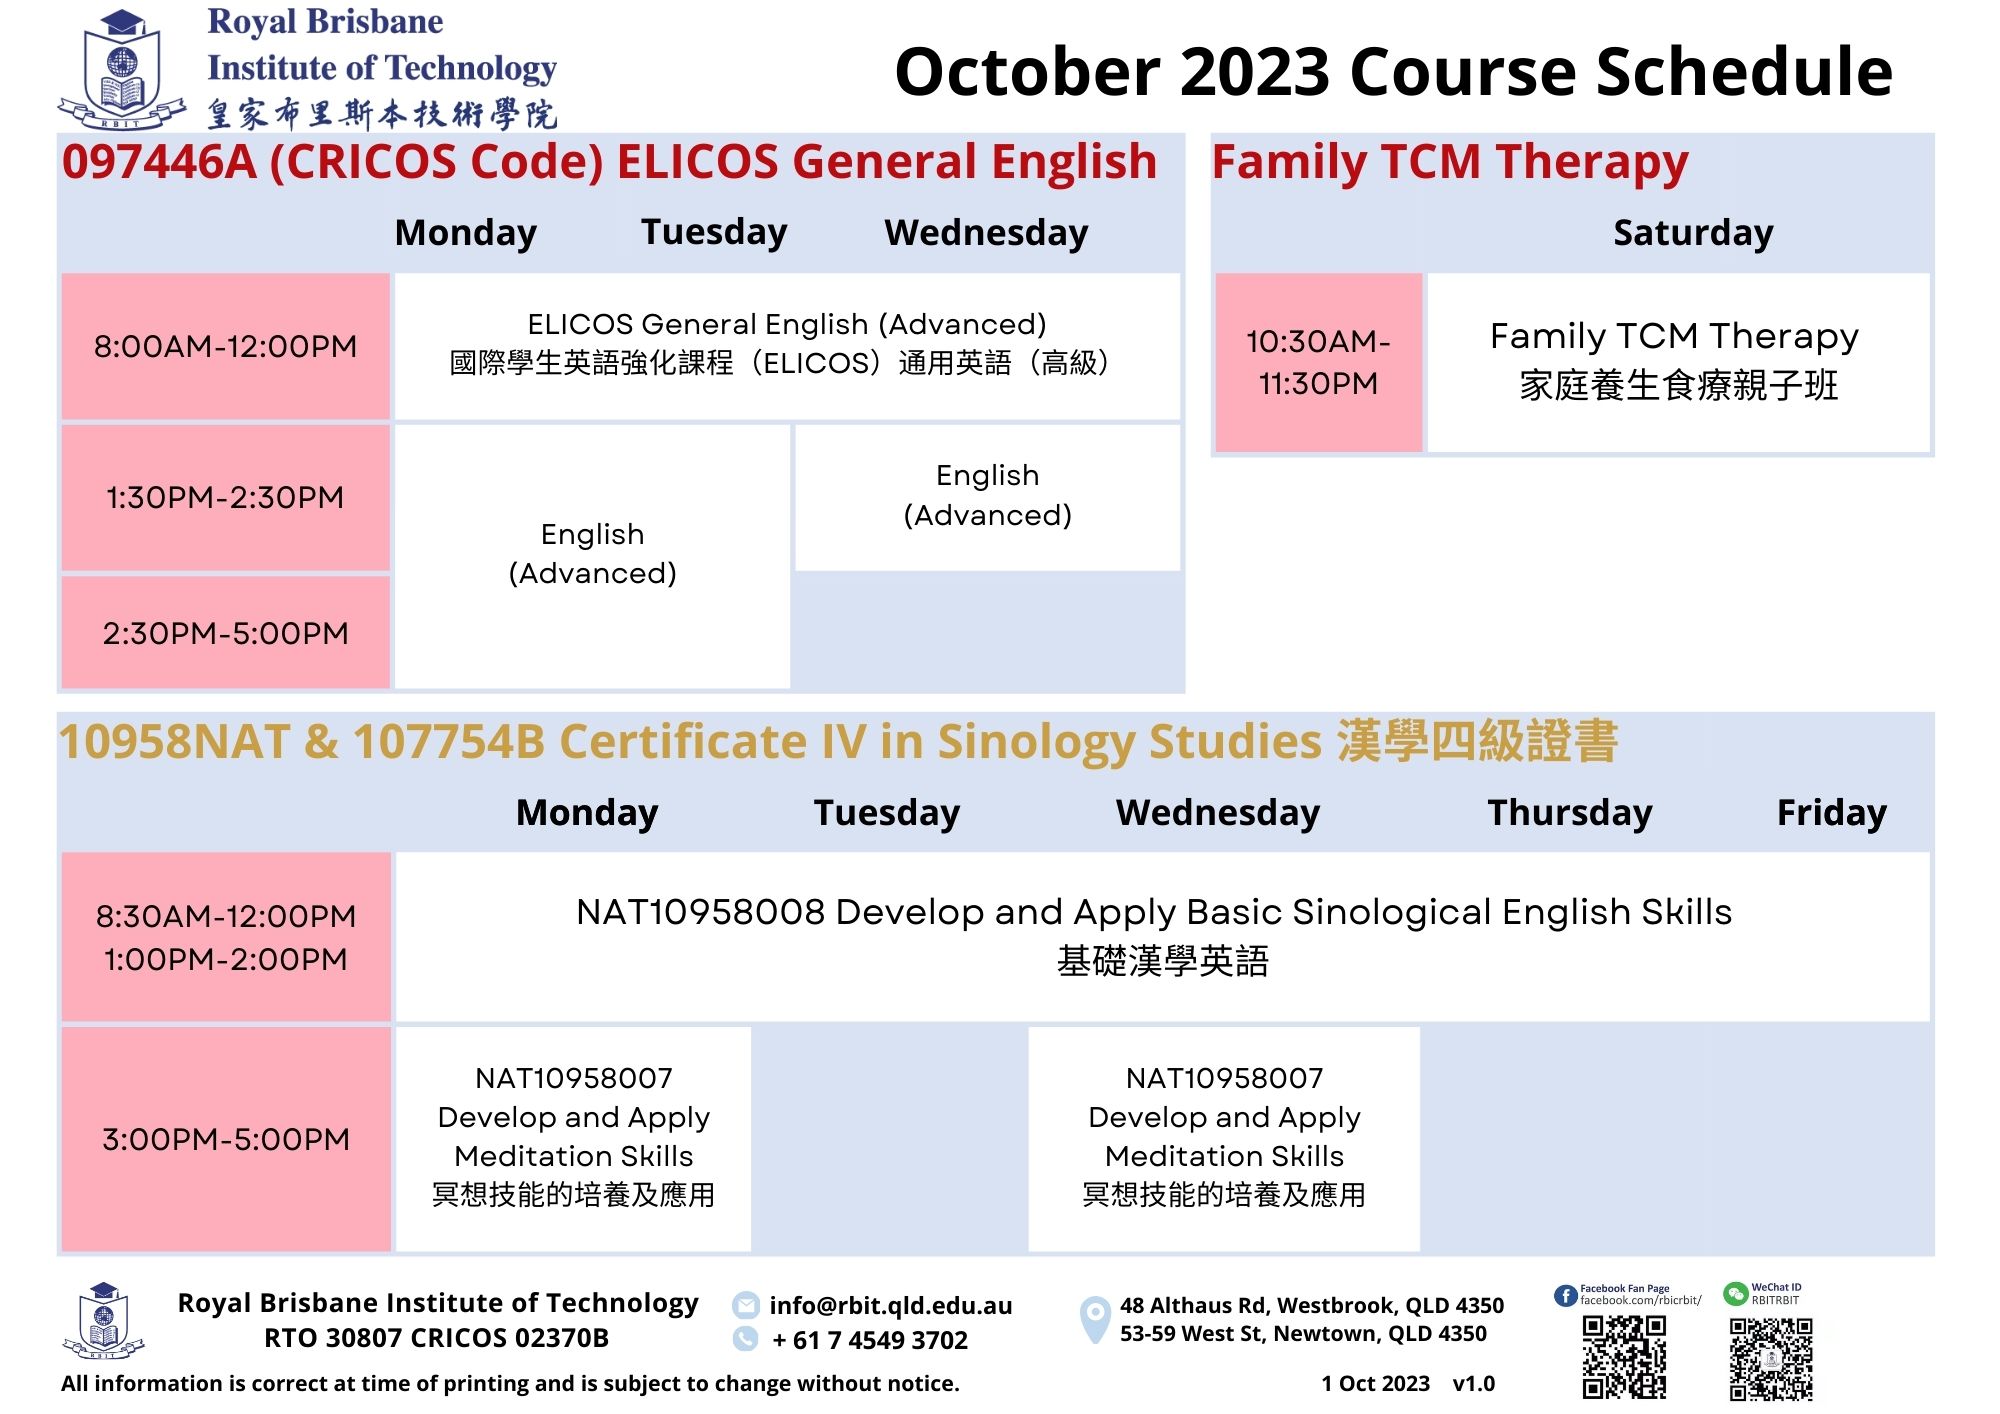 AL0_202310 Course Schedule_v1.0.jpg